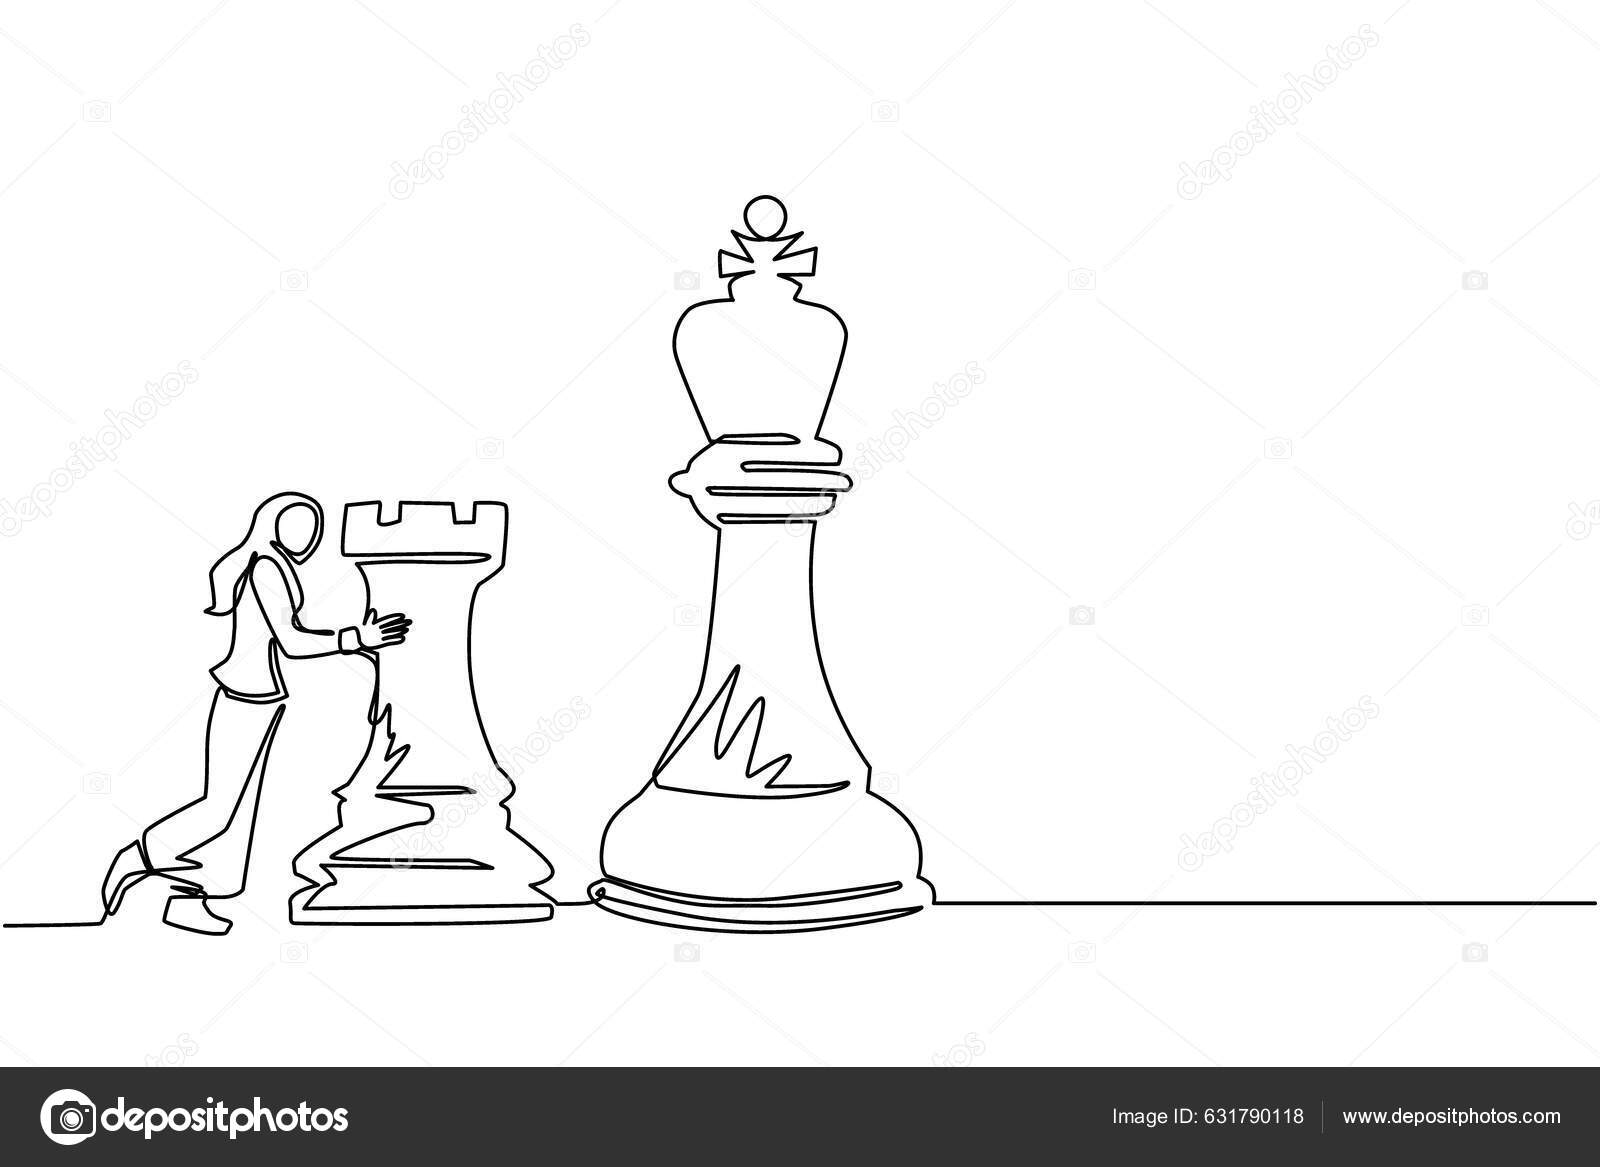 Design gráfico plano desenhando figuras de xadrez de madeira no